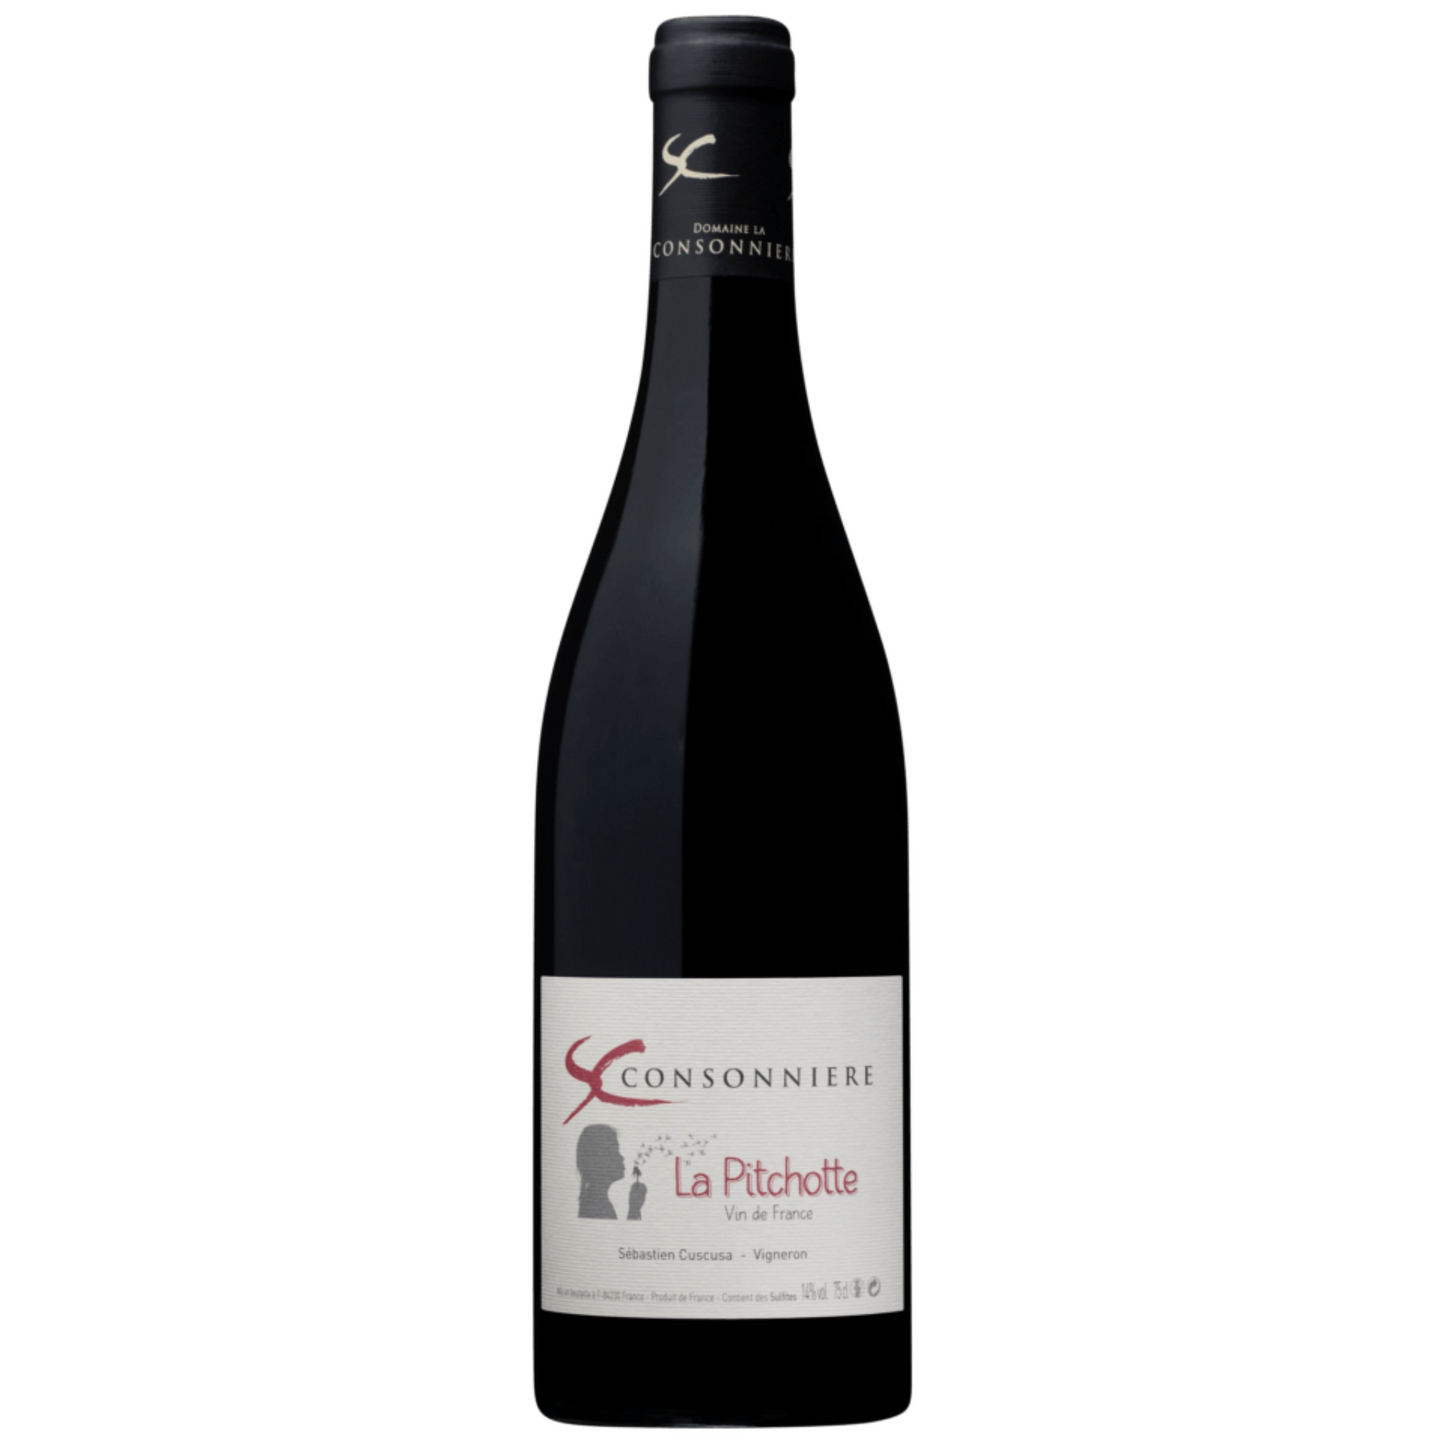 La Pitchotte, Domaine La Consonnière, Vin de France